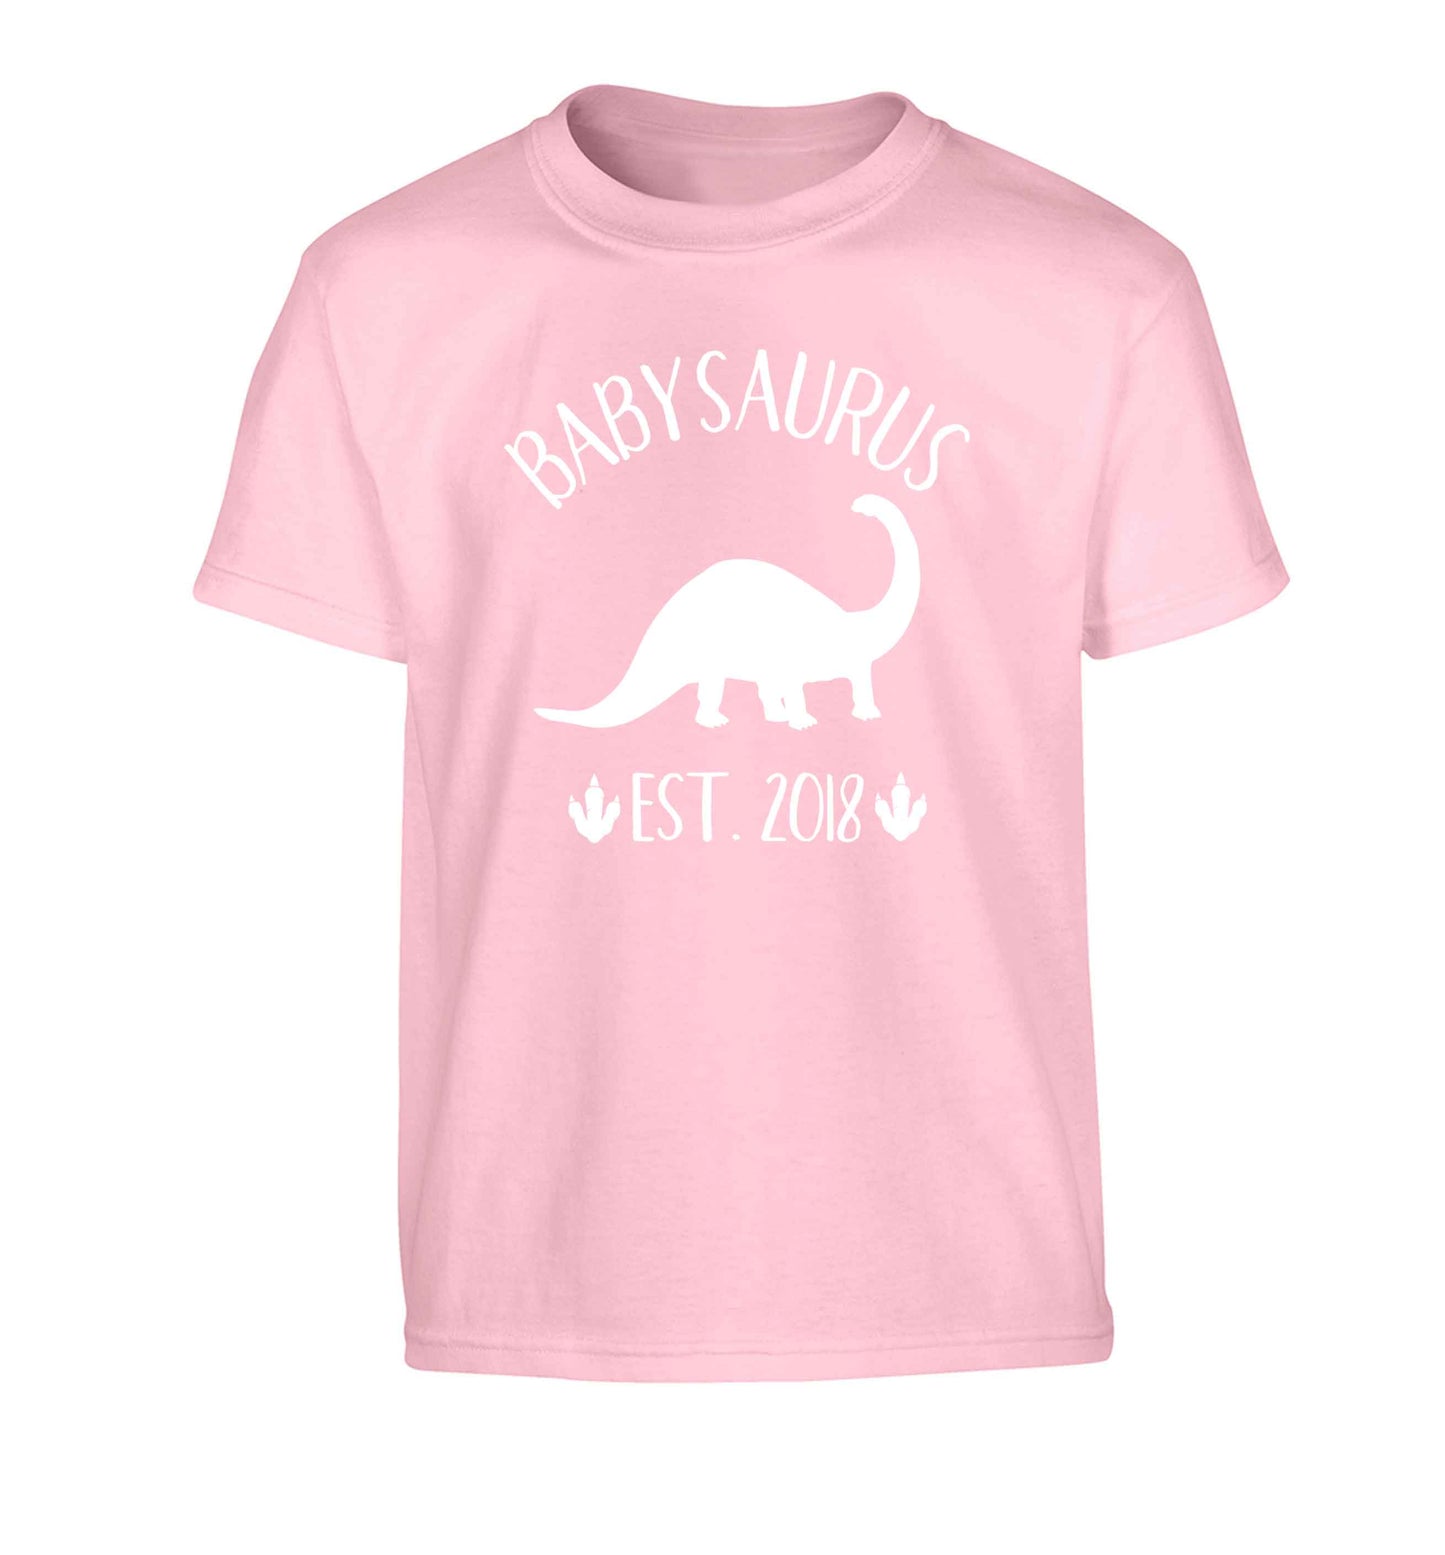 Personalised babysaurus since (custom date) Children's light pink Tshirt 12-13 Years